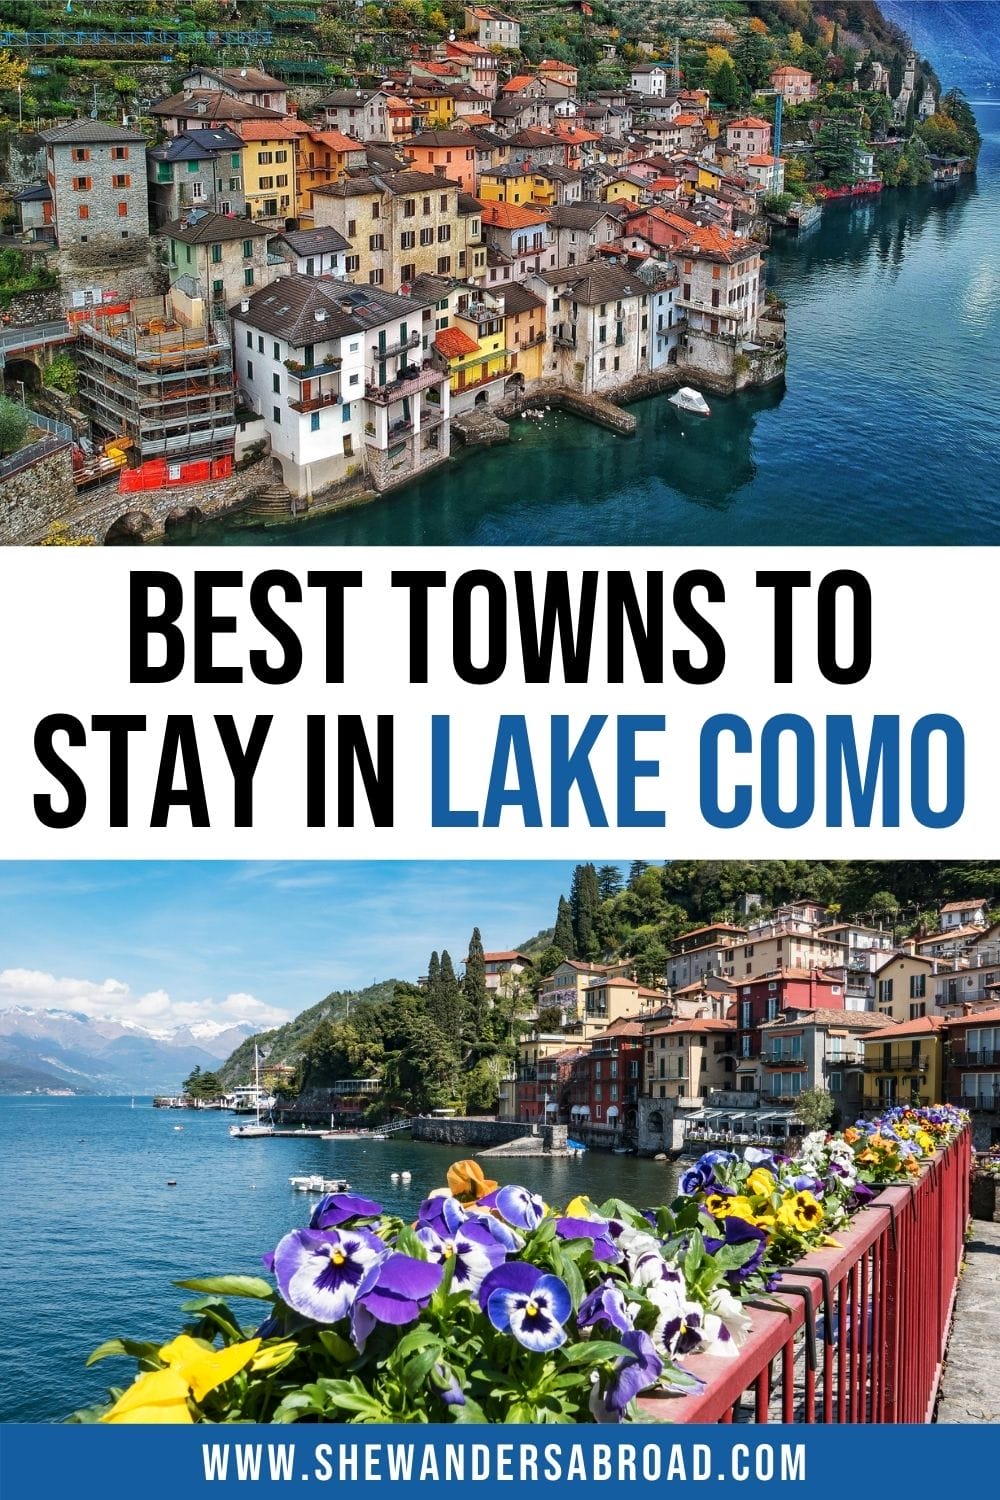 Parhaat majoituspaikat Comojärvellä: Best Towns Hotellit